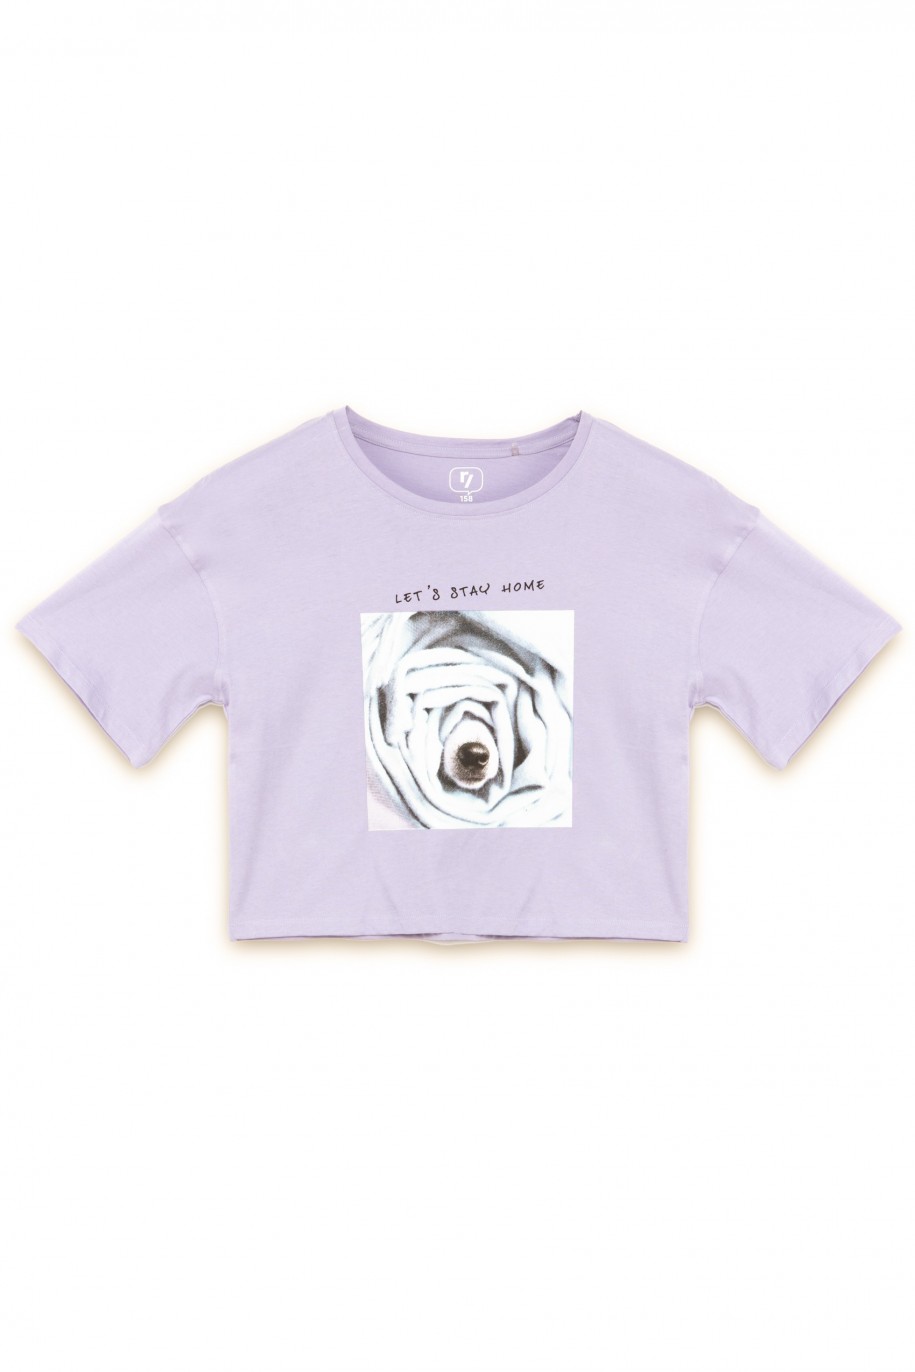 Fioletowy t-shirt dla dziewczyny ROSE - 31554